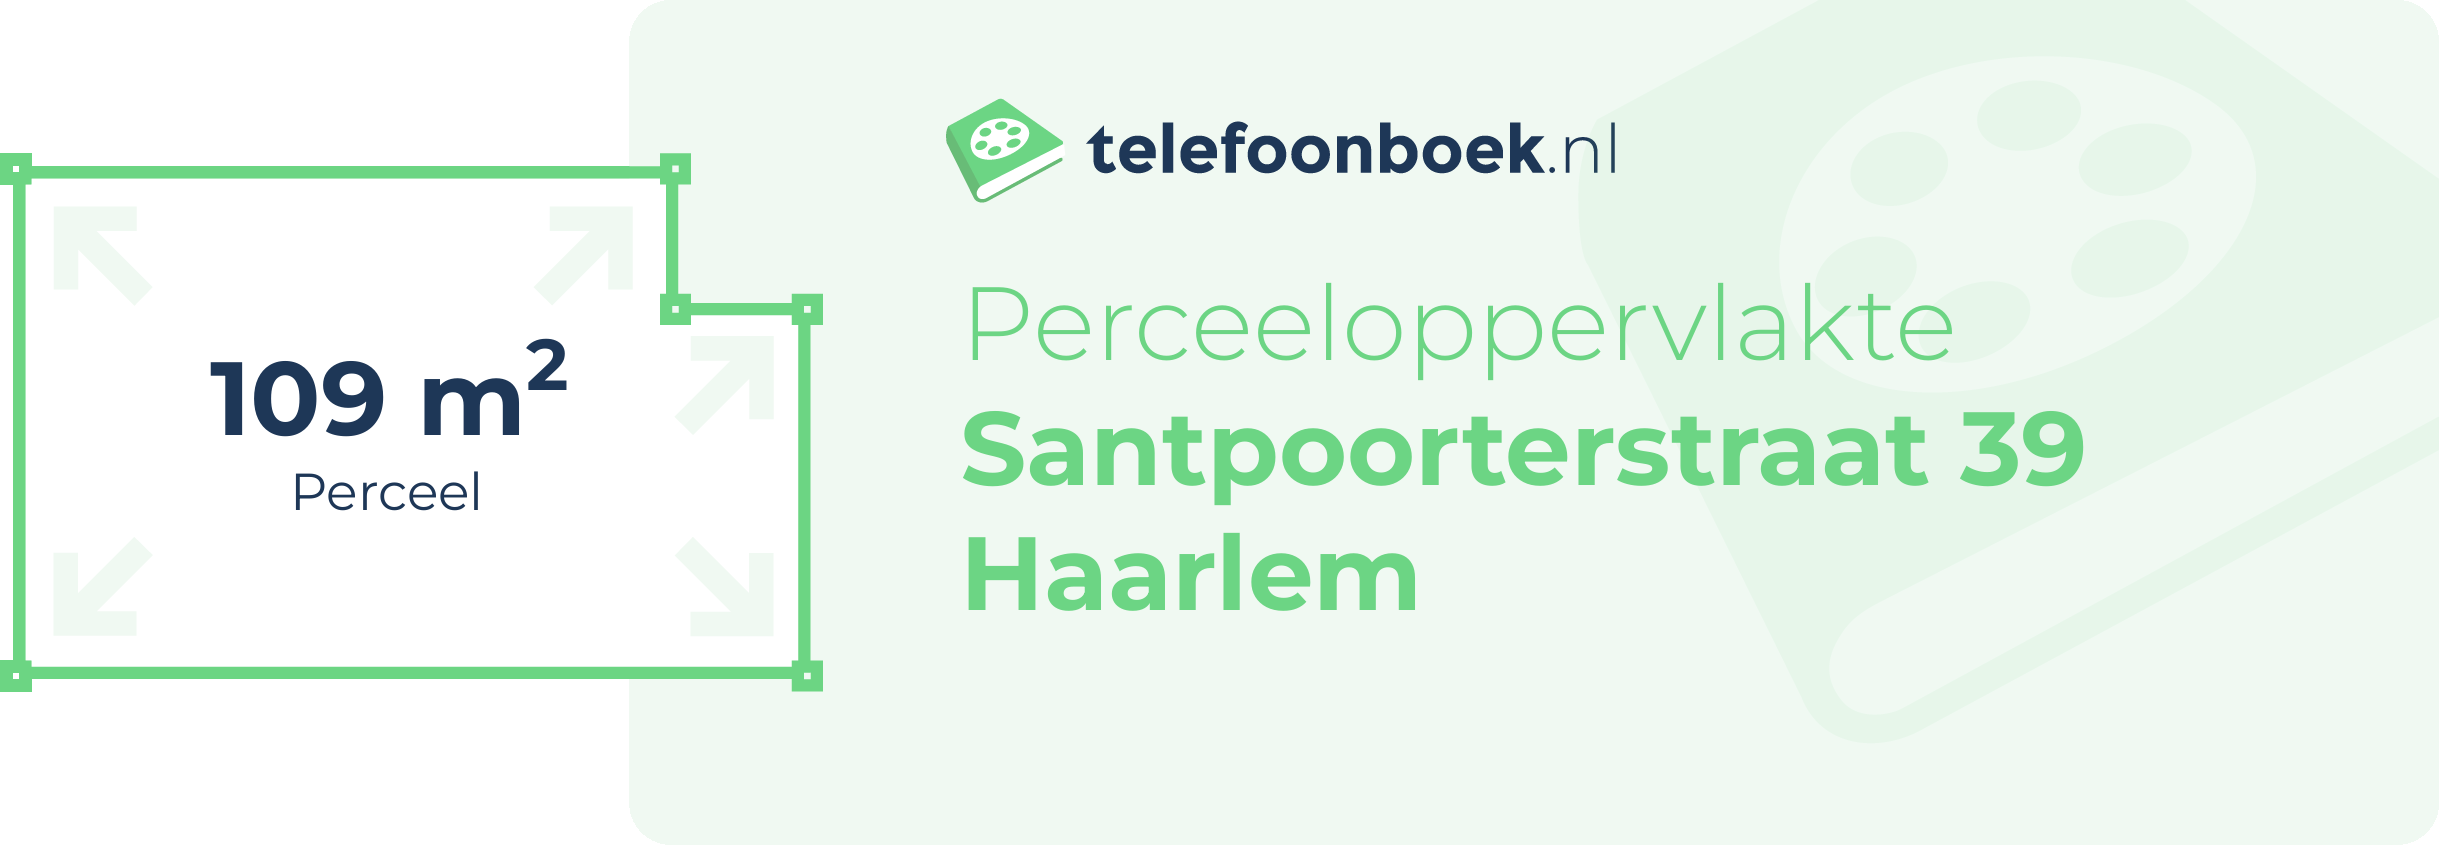 Perceeloppervlakte Santpoorterstraat 39 Haarlem